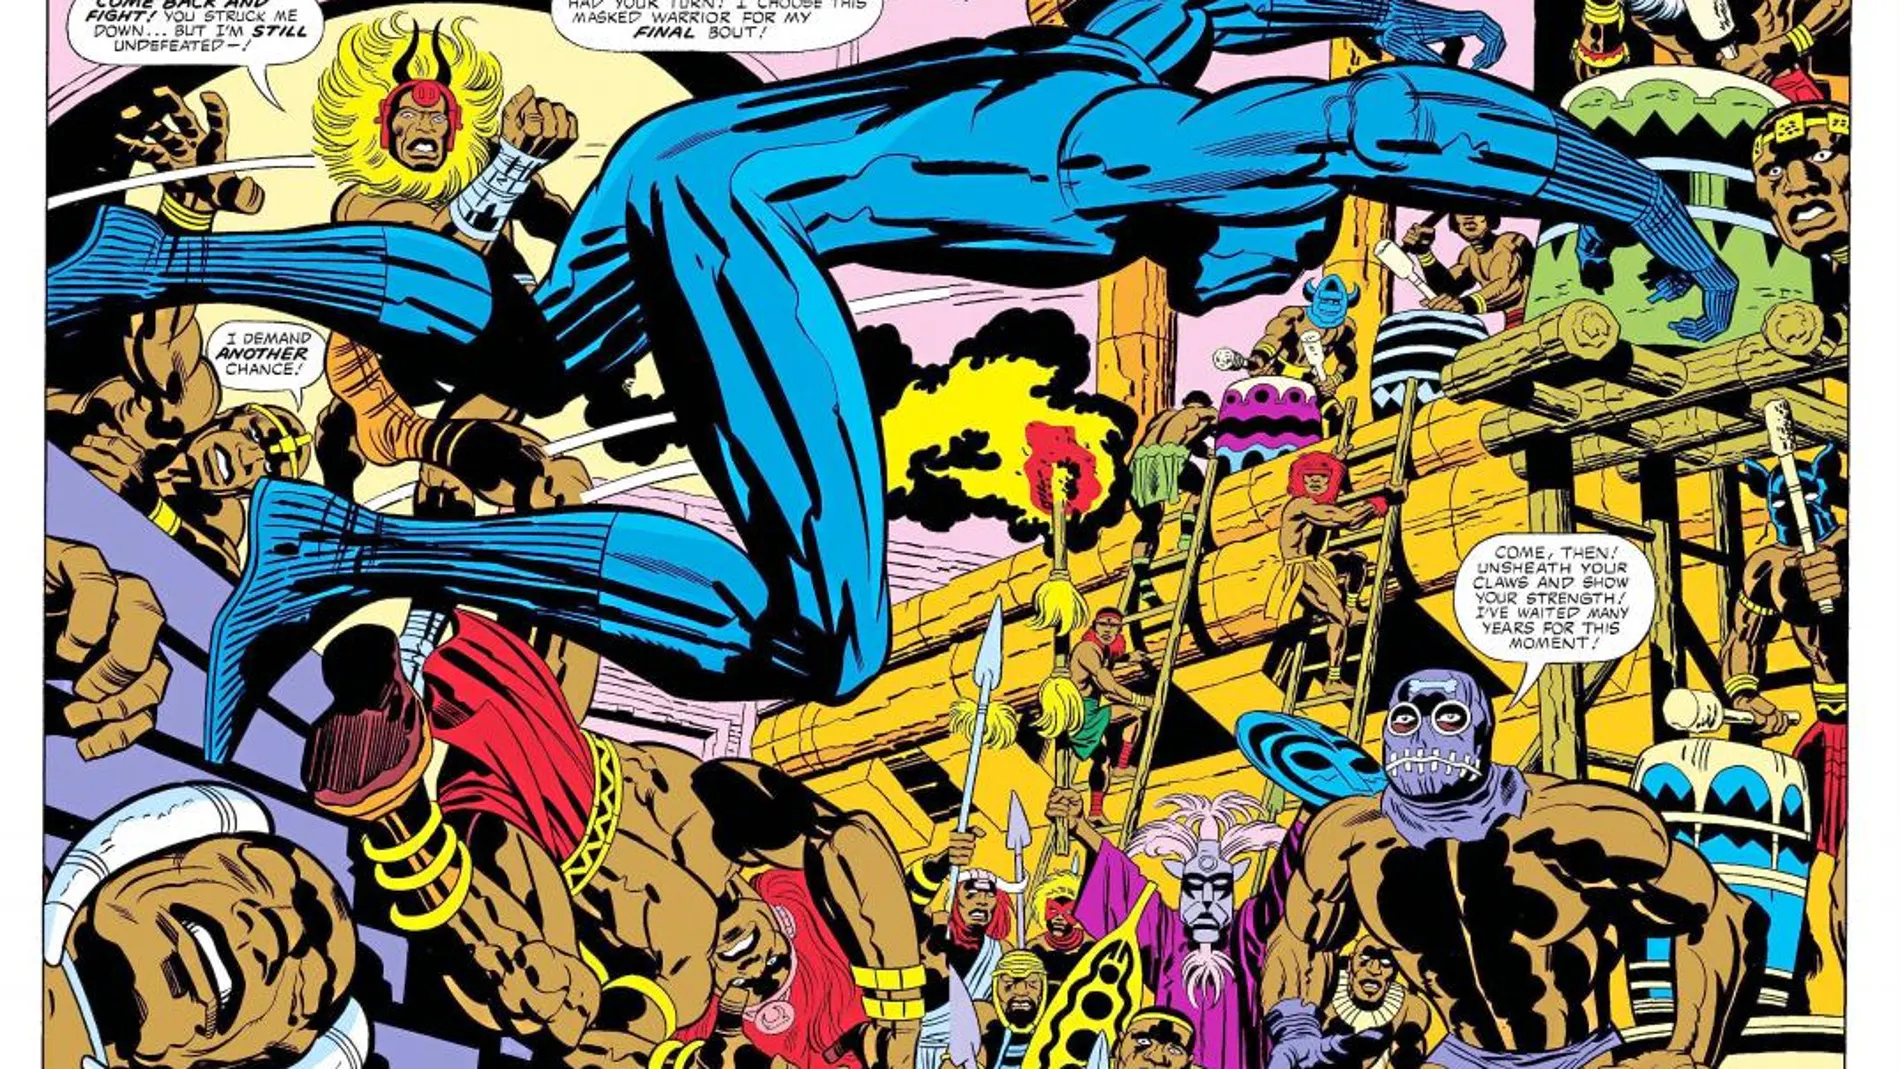 Otra de las geniales creaciones de Kirby, Black Panther, el primer superhéroe negro que apareció por primera vez en los 4 Fantásticos y que ahora es estrella absoluta del universo Marvel con el estreno de su película propia